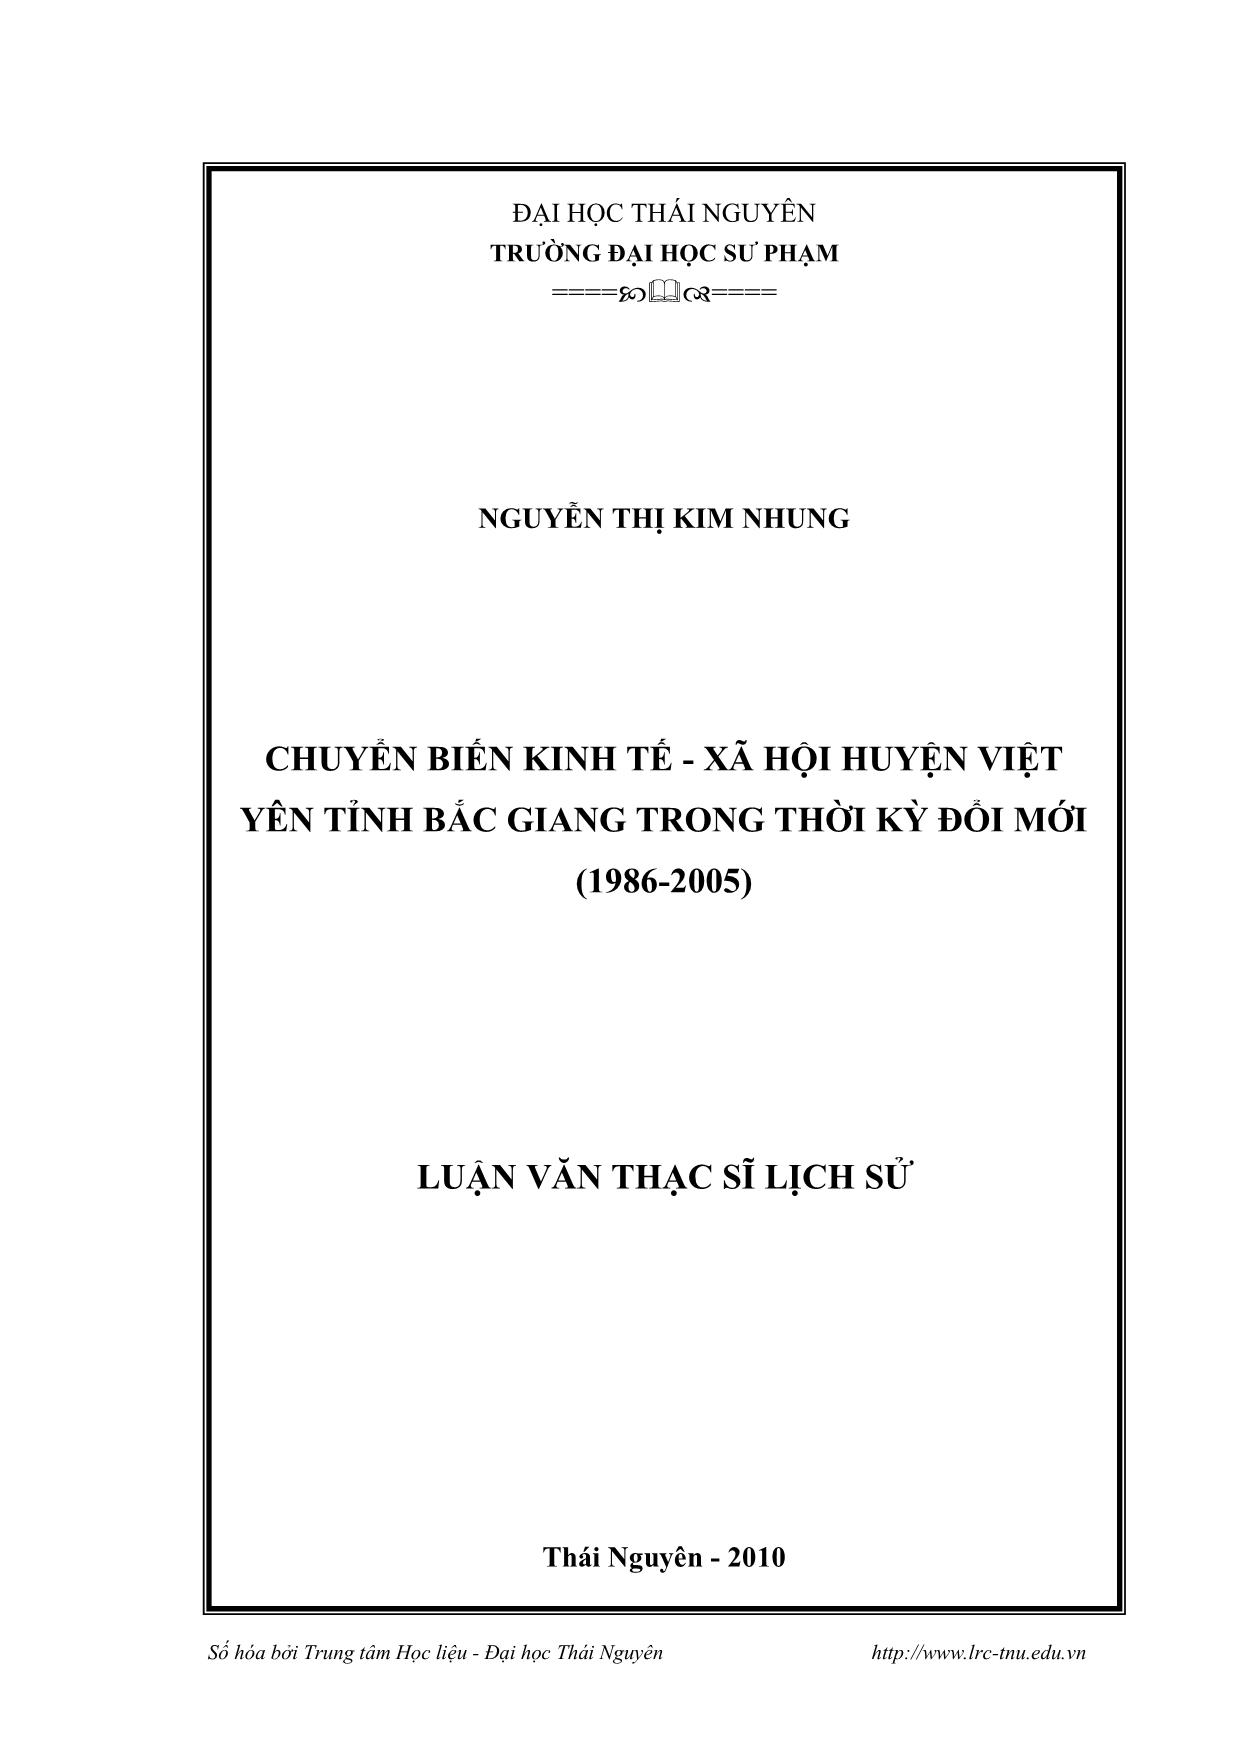 Luận văn Chuyển biến Kinh tế - Xã hội huyện Việt Yên, tỉnh Bắc Giang trong thời kỳ đổi mới (1986-2005) trang 1